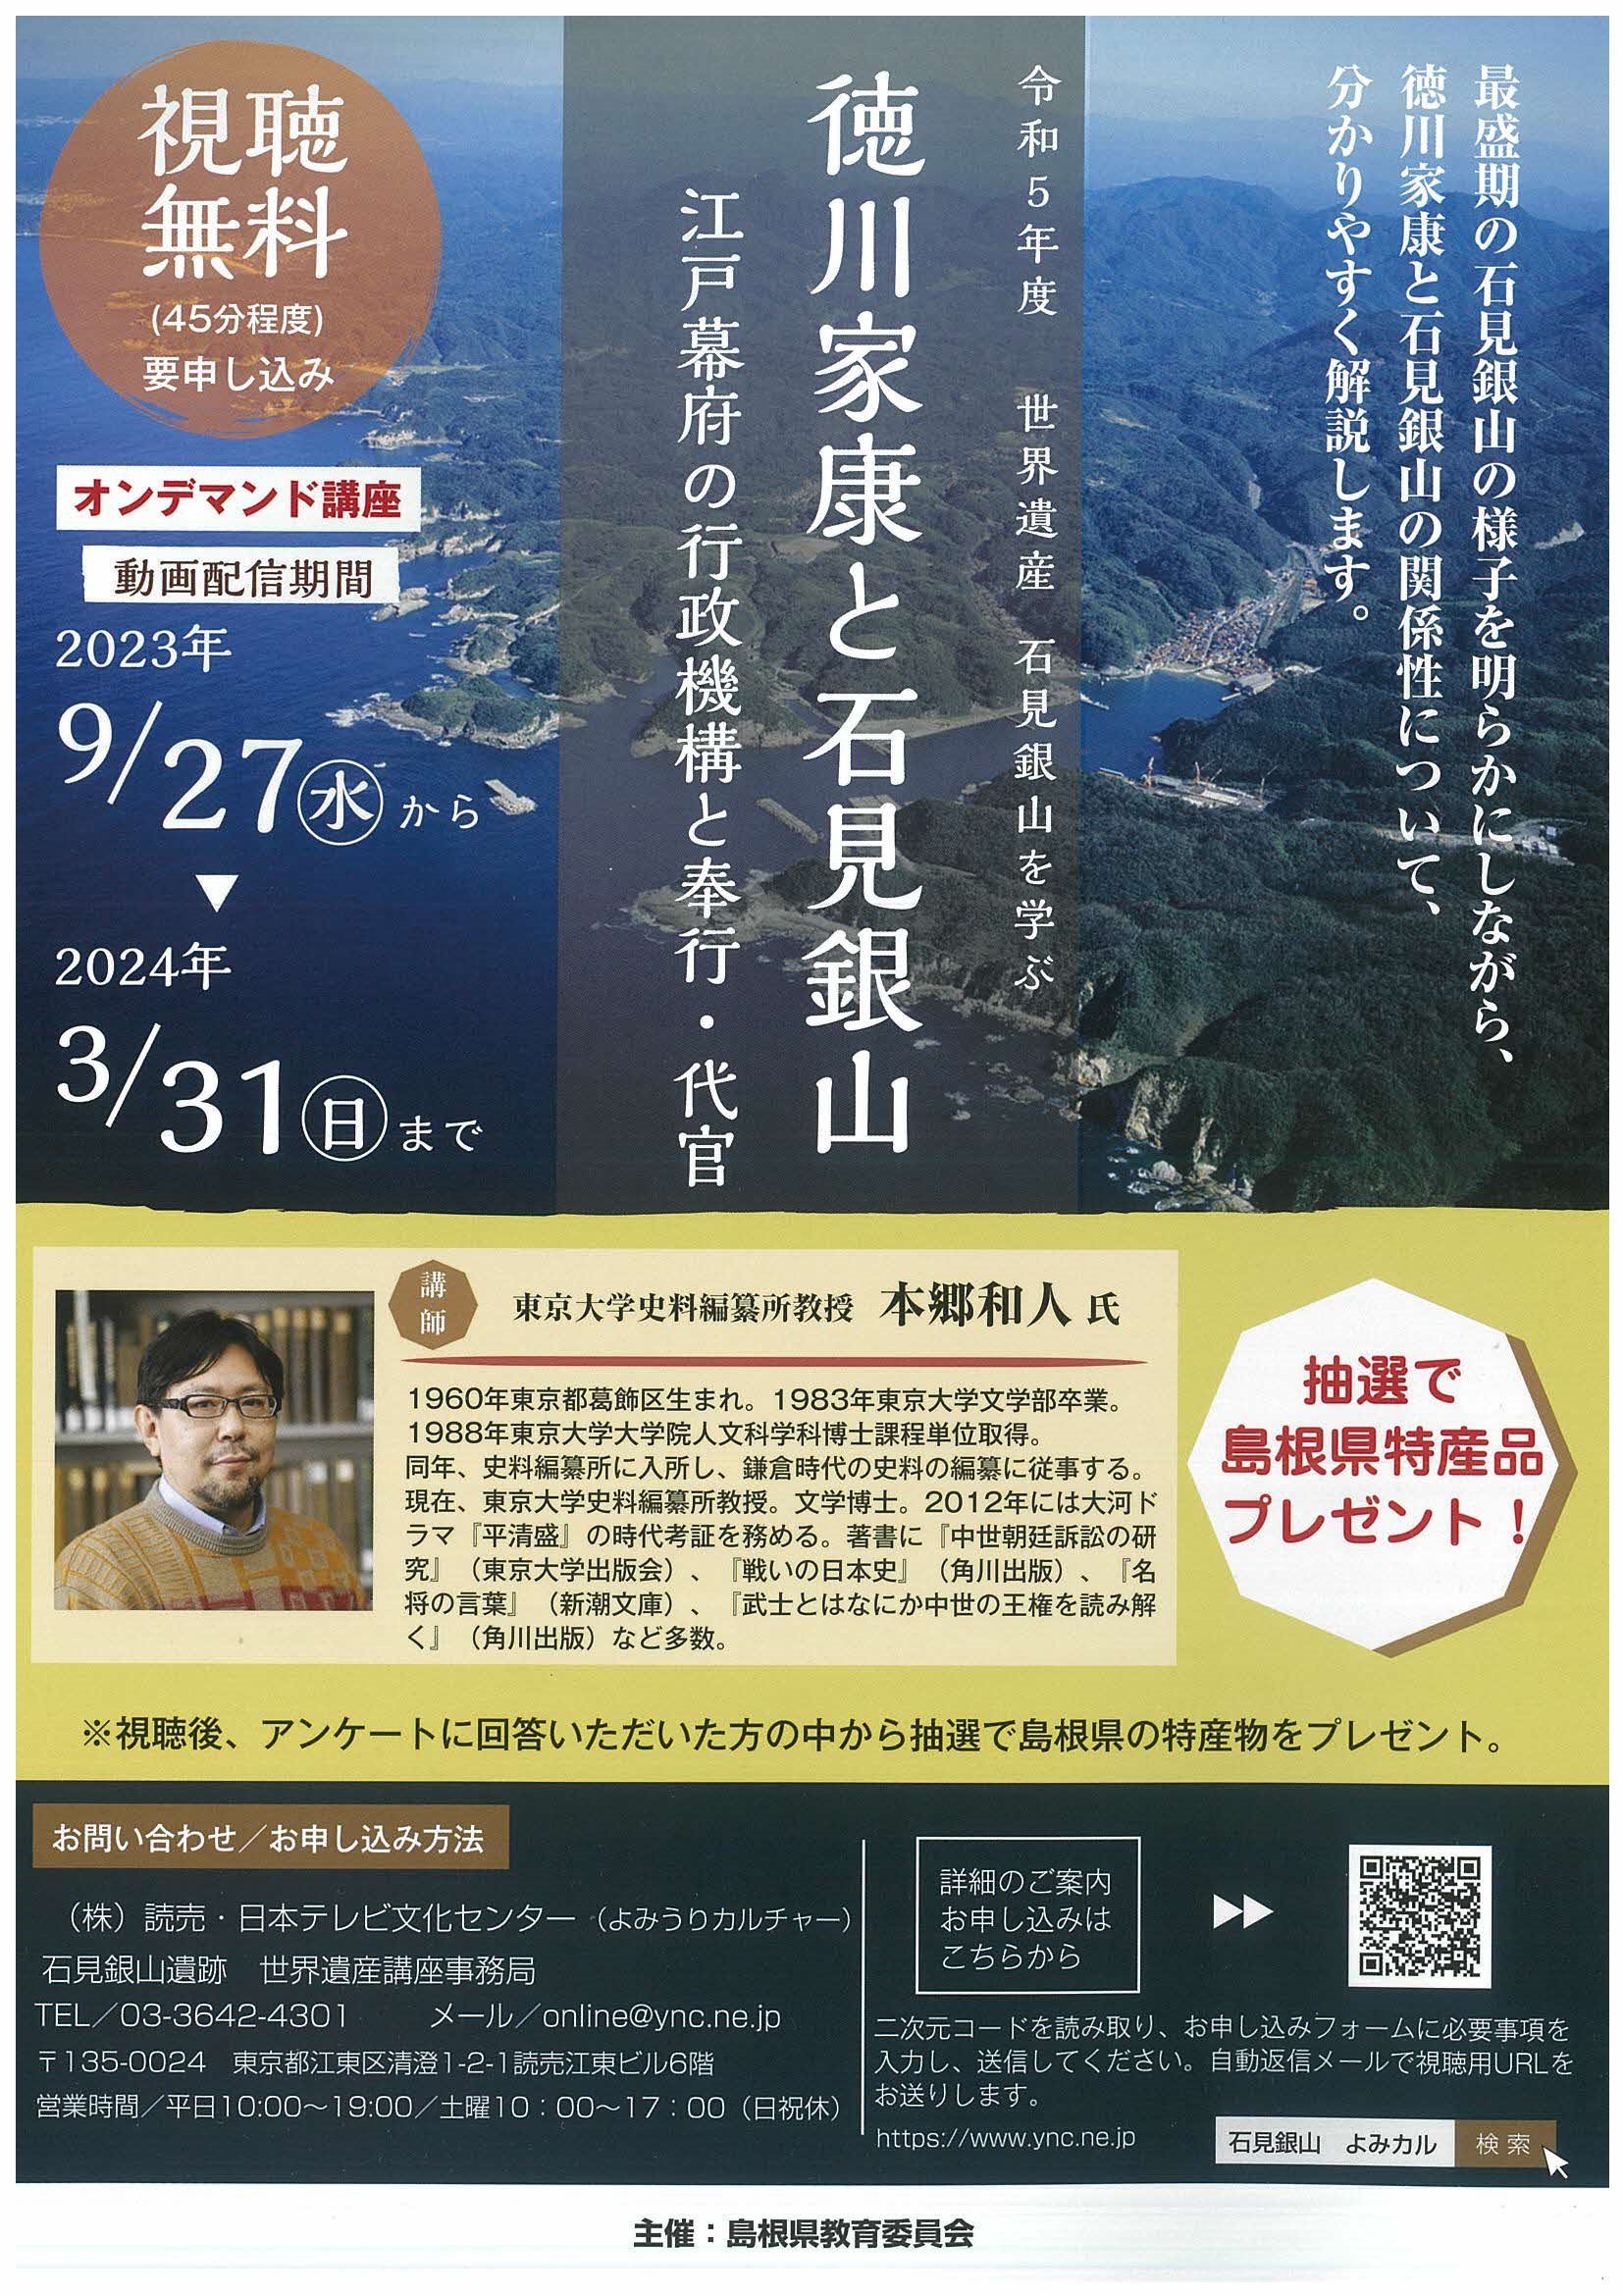 本郷和人氏による世界遺産石見銀山を学ぶオンデマンド講座の開催 